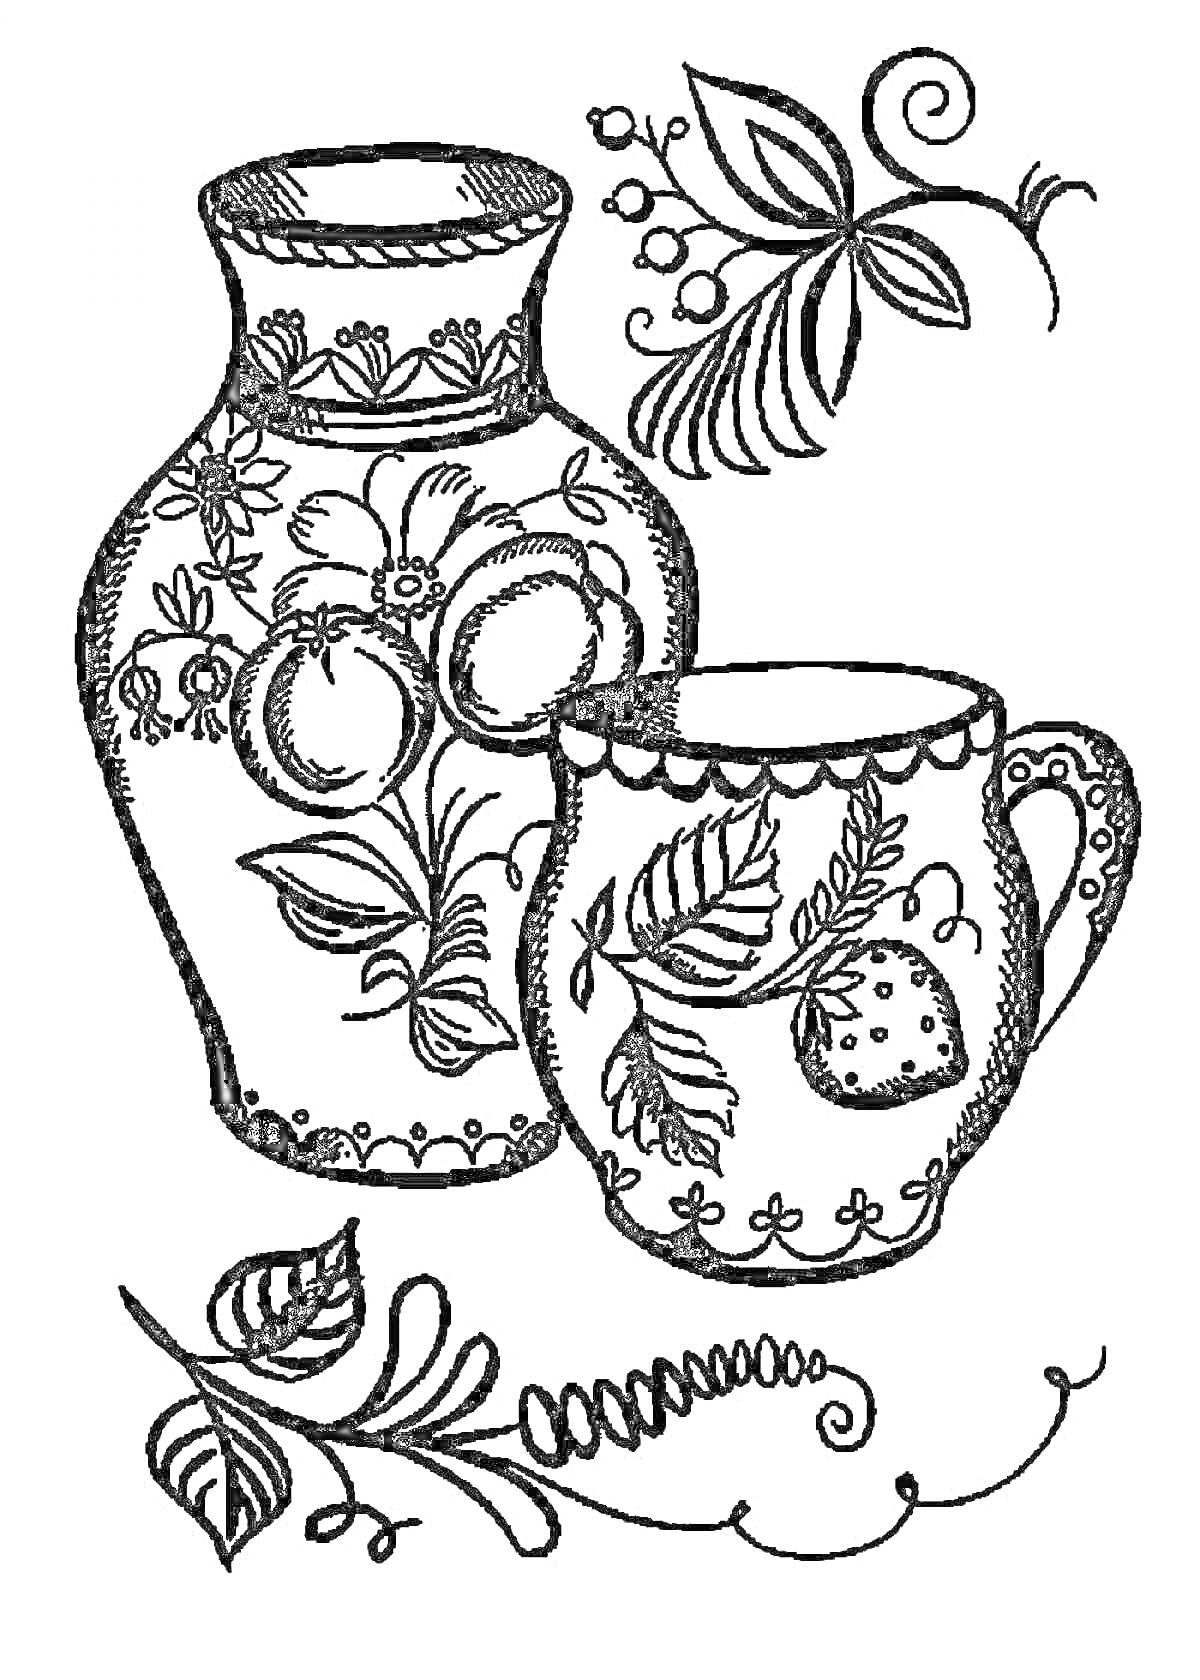 Раскраска Хохломская роспись на кувшине и кружке с элементами цветов и листьев